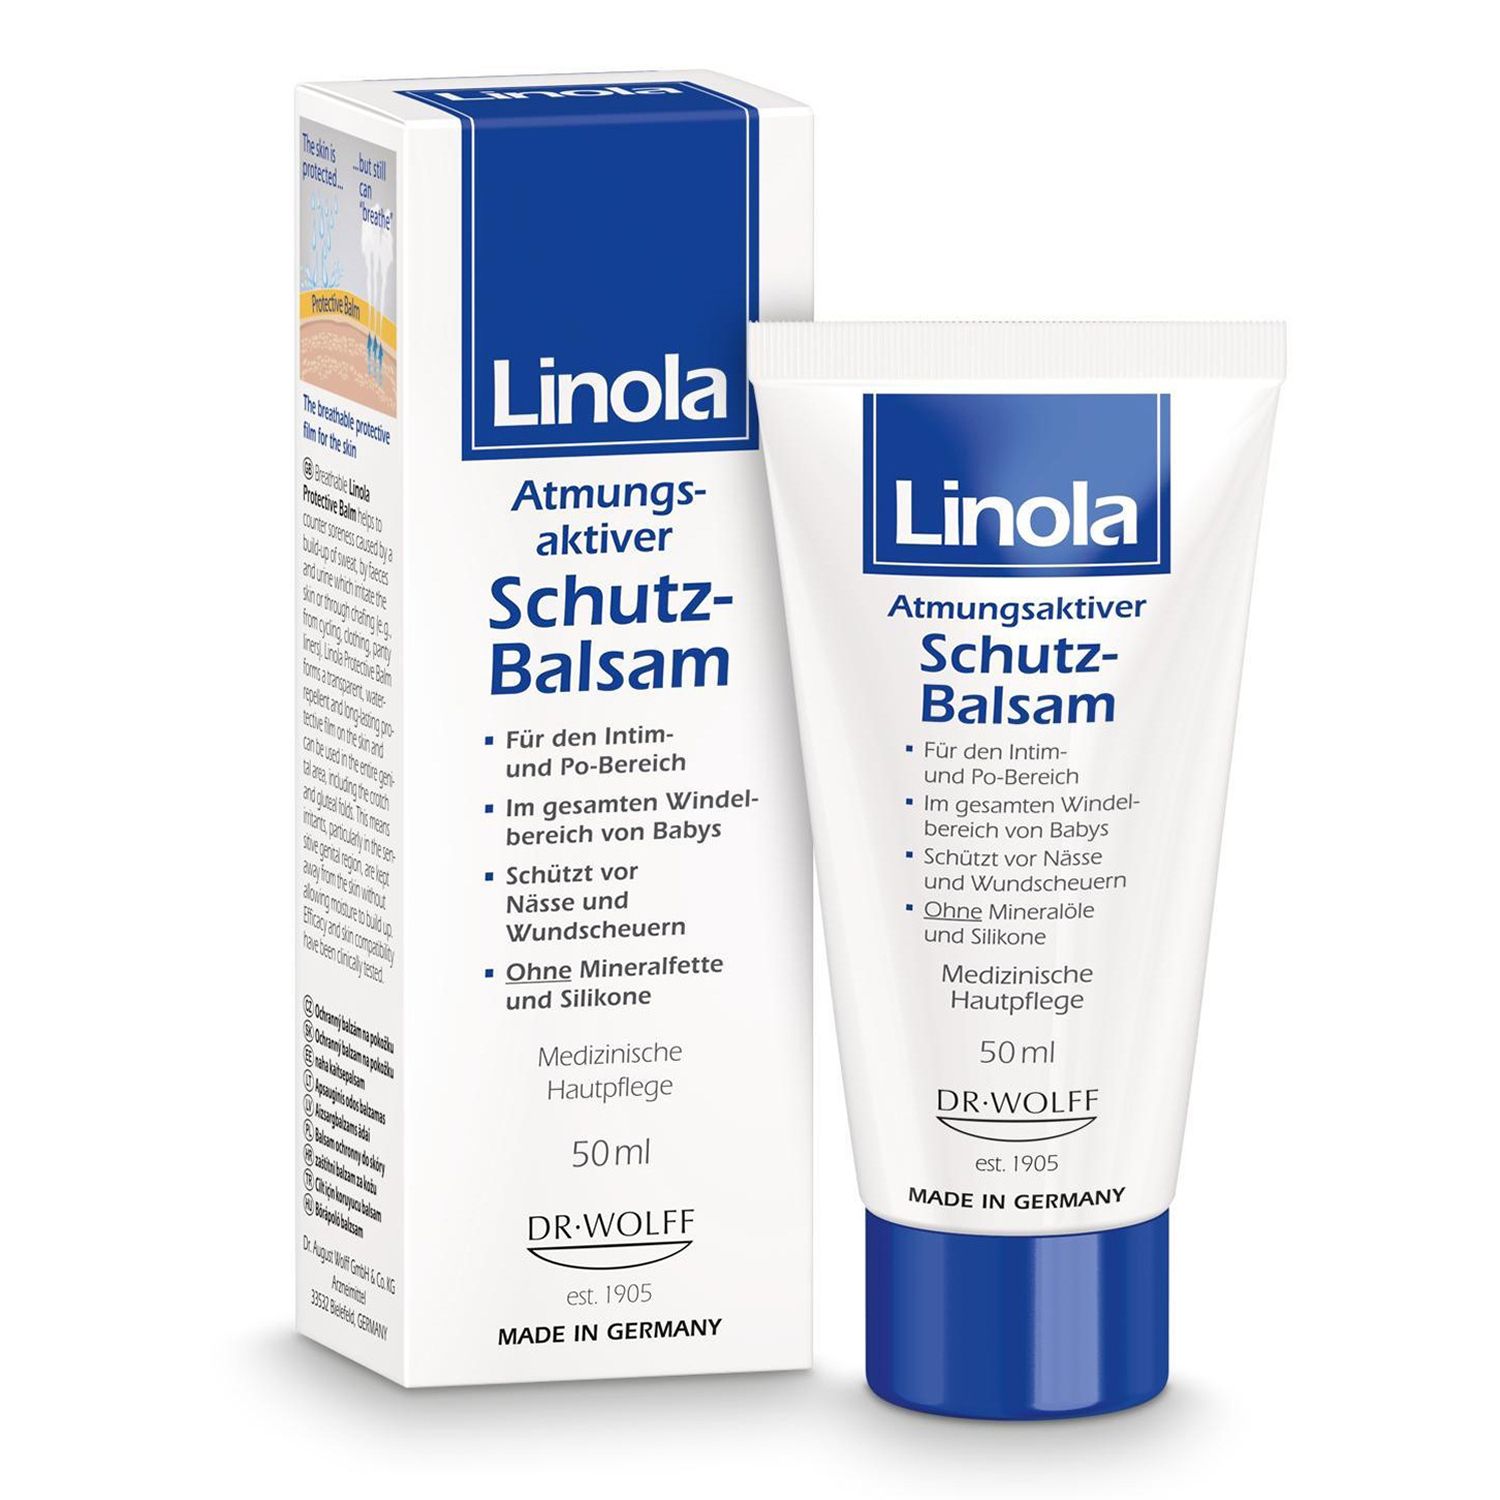 Linola Schutz-Balsam: Wundschutzcreme bei Hautwolf oder gereizter Haut